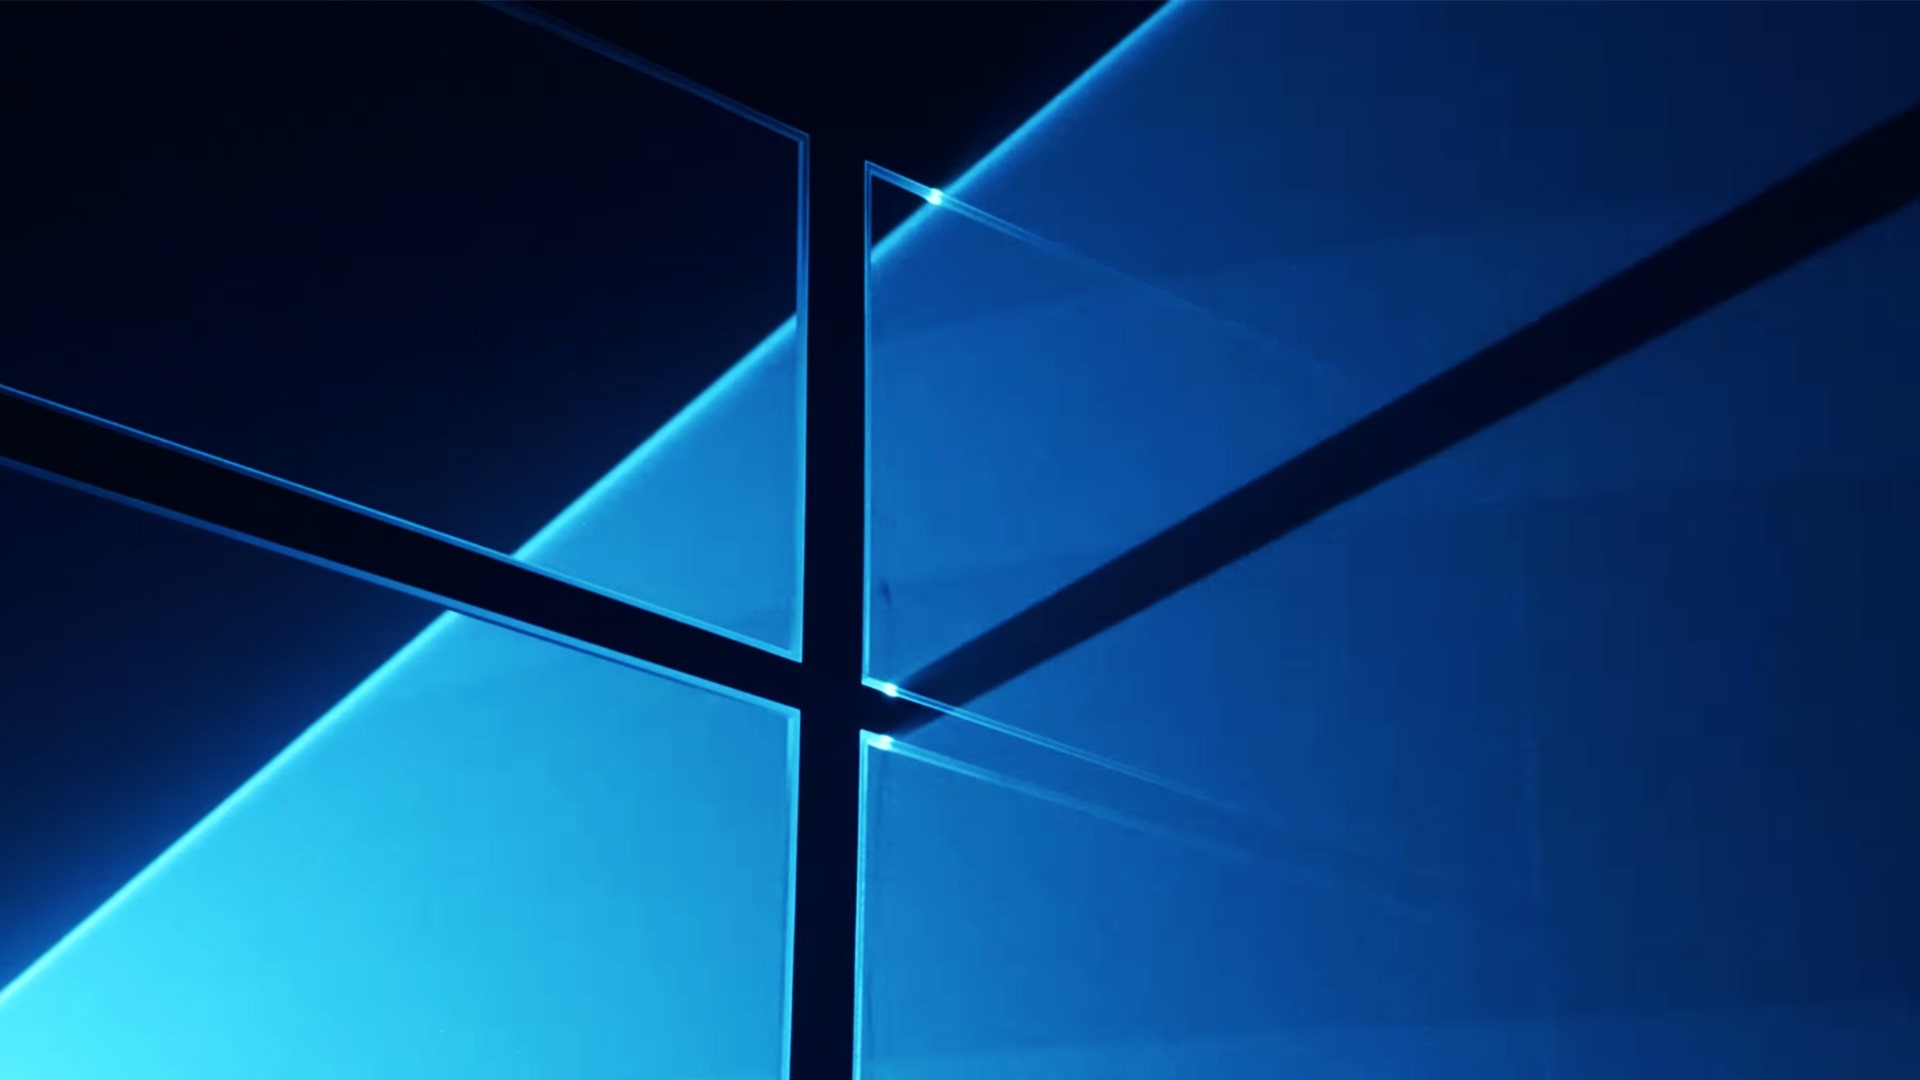 Windows 10 高清桌面壁纸合集 二 15 19x1080 壁纸下载 Windows 10 高清桌面壁纸合集 二 系统壁纸 V3 壁纸站